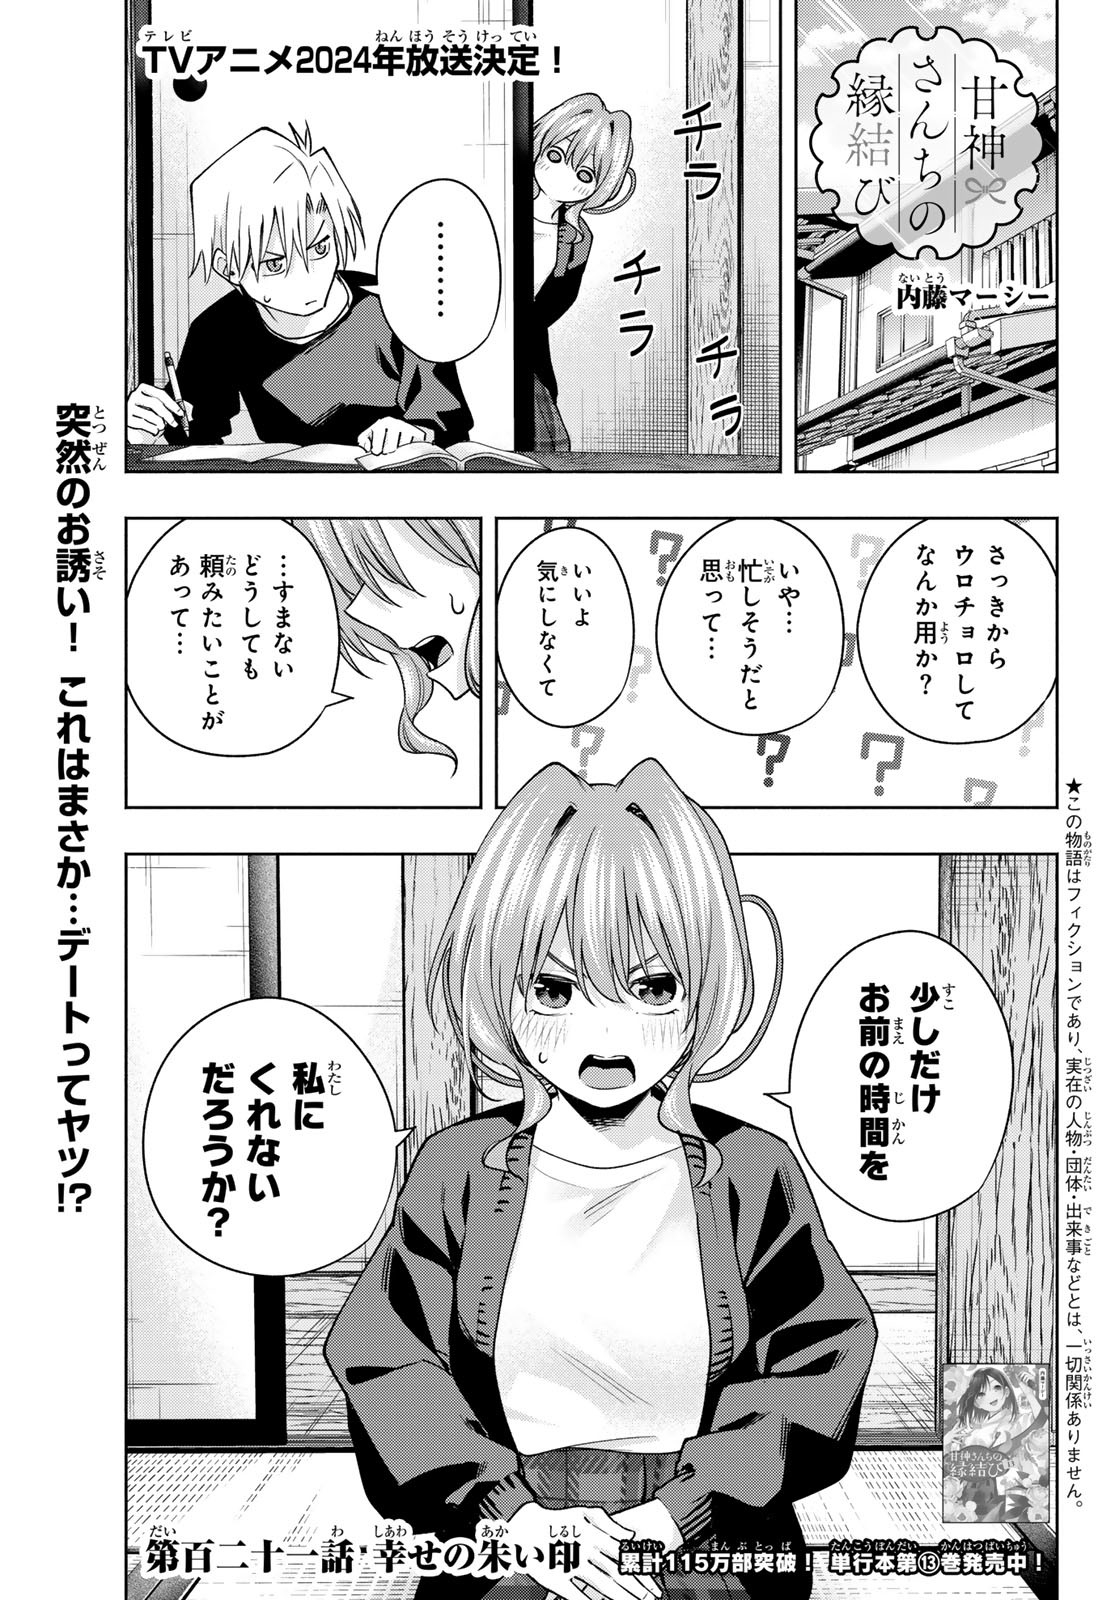 Amagami-san Chi no Enmusubi - Chapter 121 - Page 1